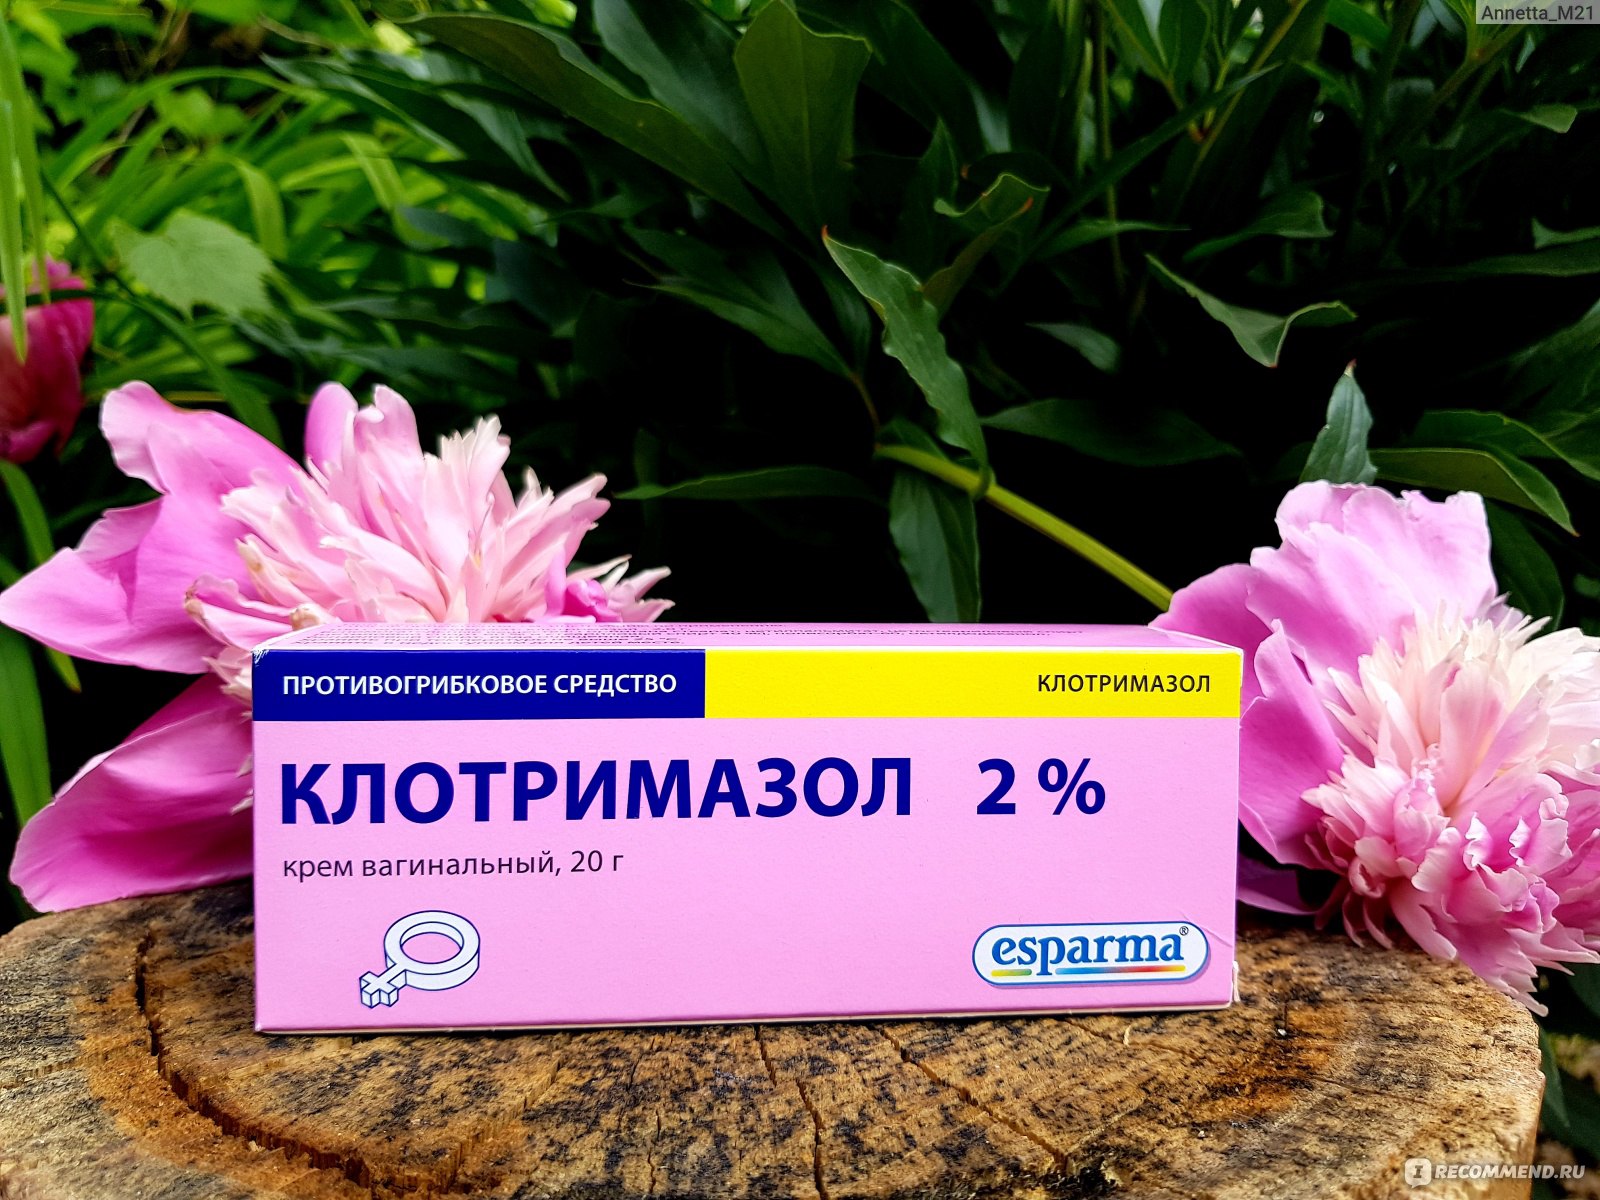 Противогрибковое средство Esparma Крем вагинальный Клотримазол 2% 20 г фото